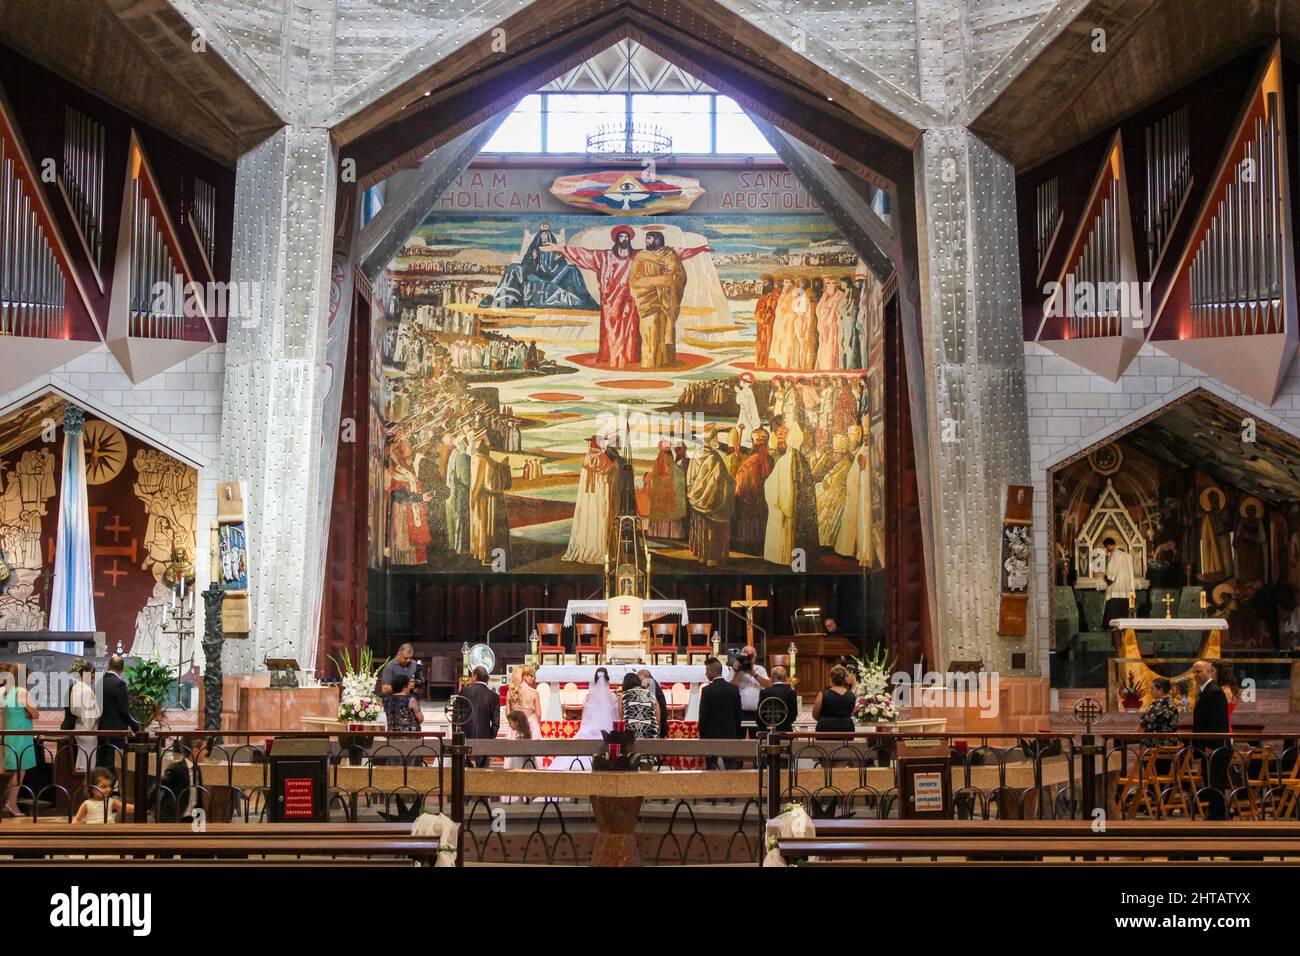 Une cérémonie chrétienne de mariage se déroule sous une grande mosaïque dans la haute église de la Basilique de l'Annonciation à Nazareth, Israël. Banque D'Images